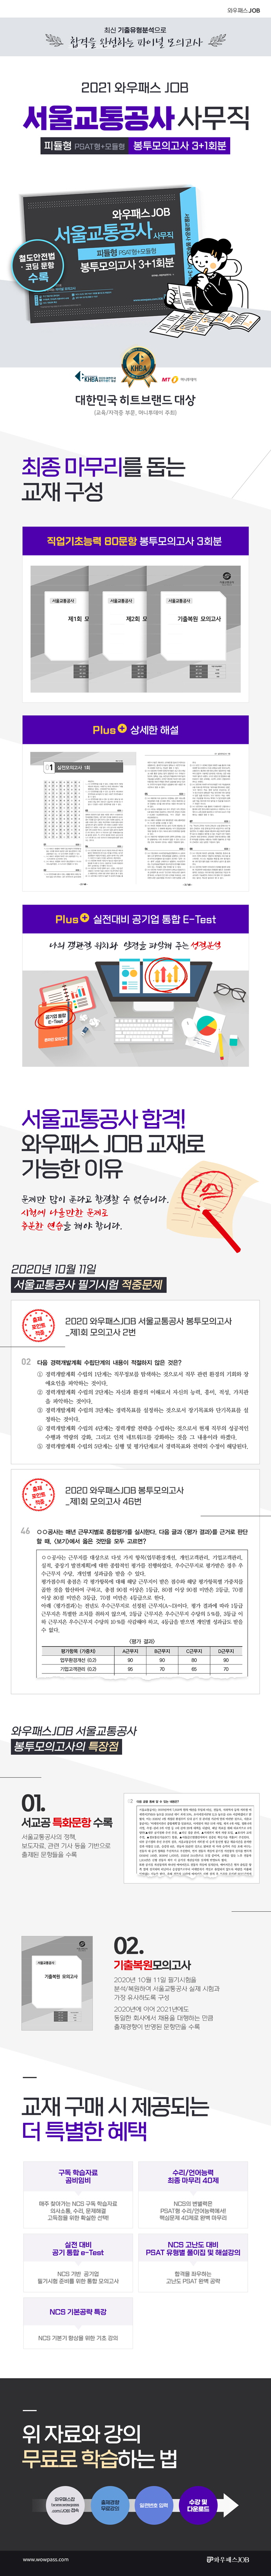 2021 와우패스JOB 서울교통공사 사무직 피듈형 봉투모의고사 3+1회분 도서 상세이미지